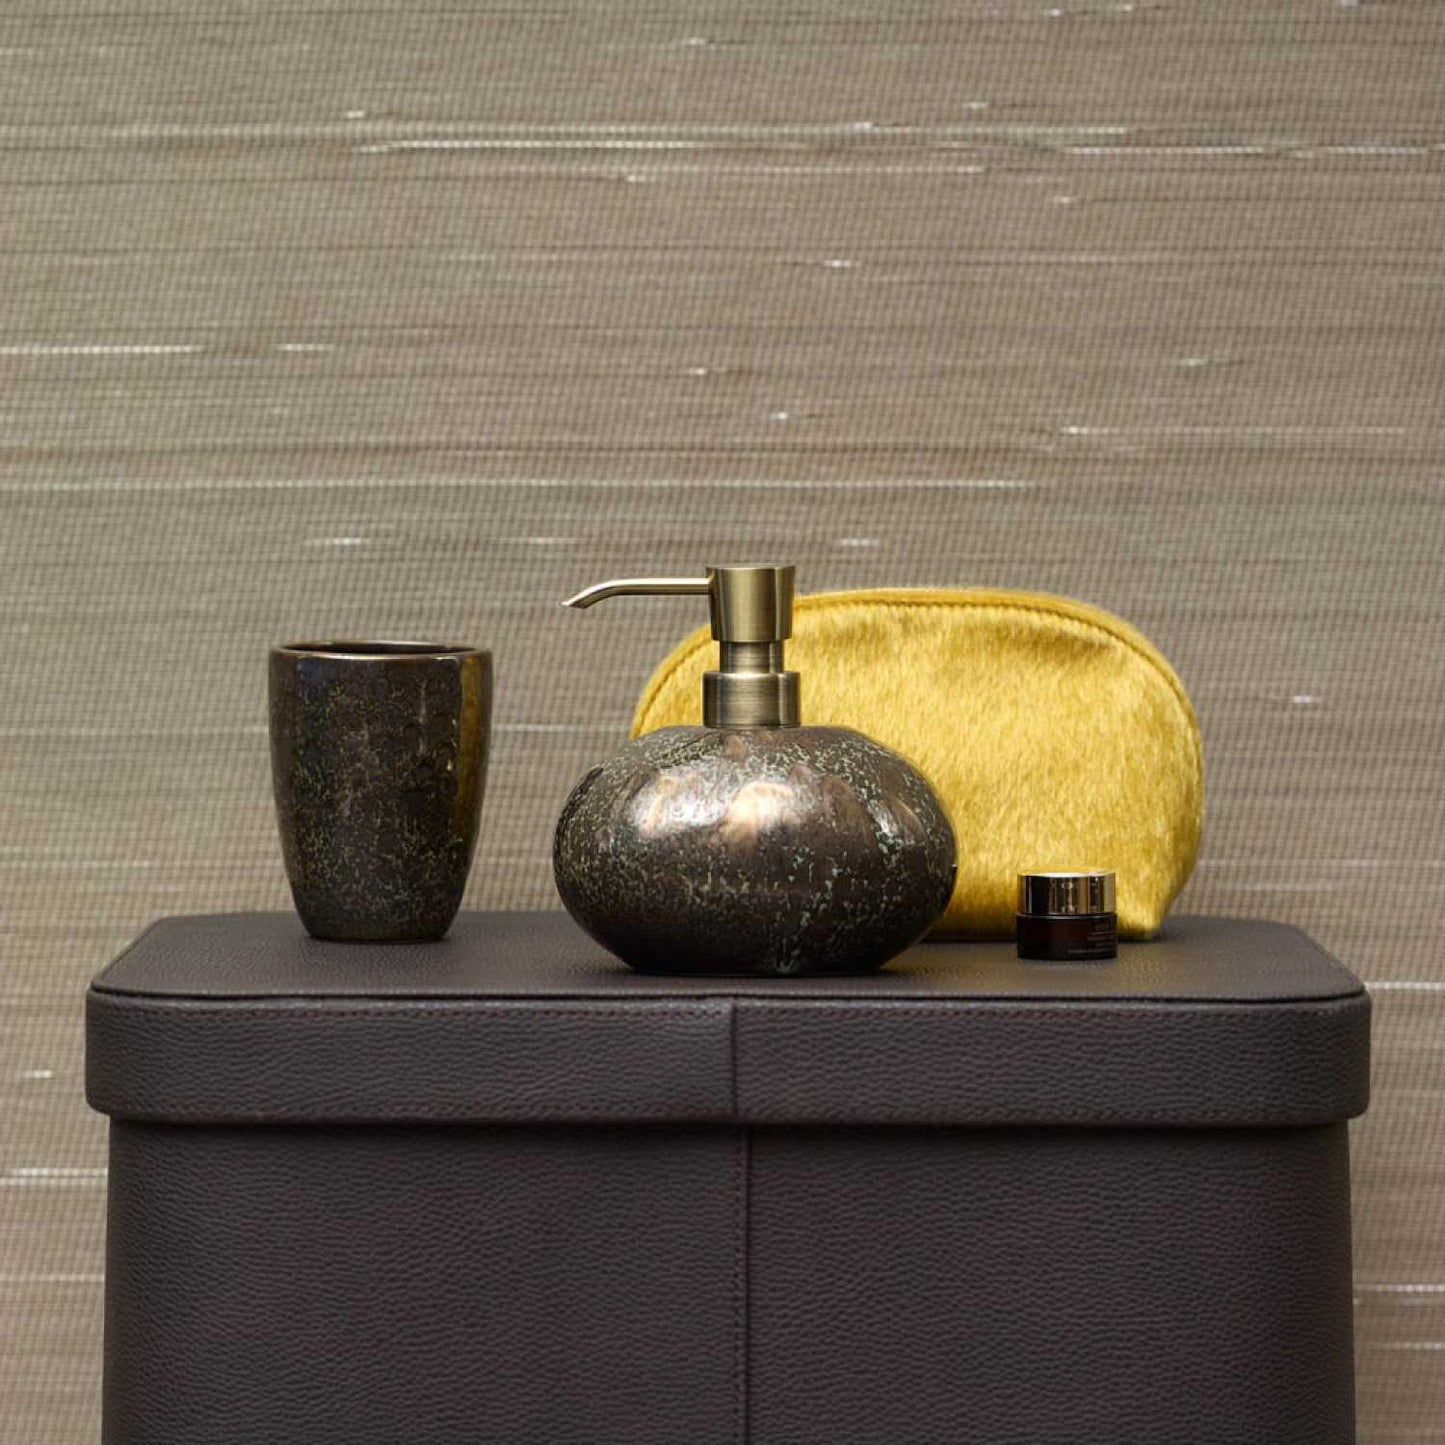 Vintage Bronze Liquid Soap Dispenser - |VESIMI Design| Luxury and Rustic bathrooms online